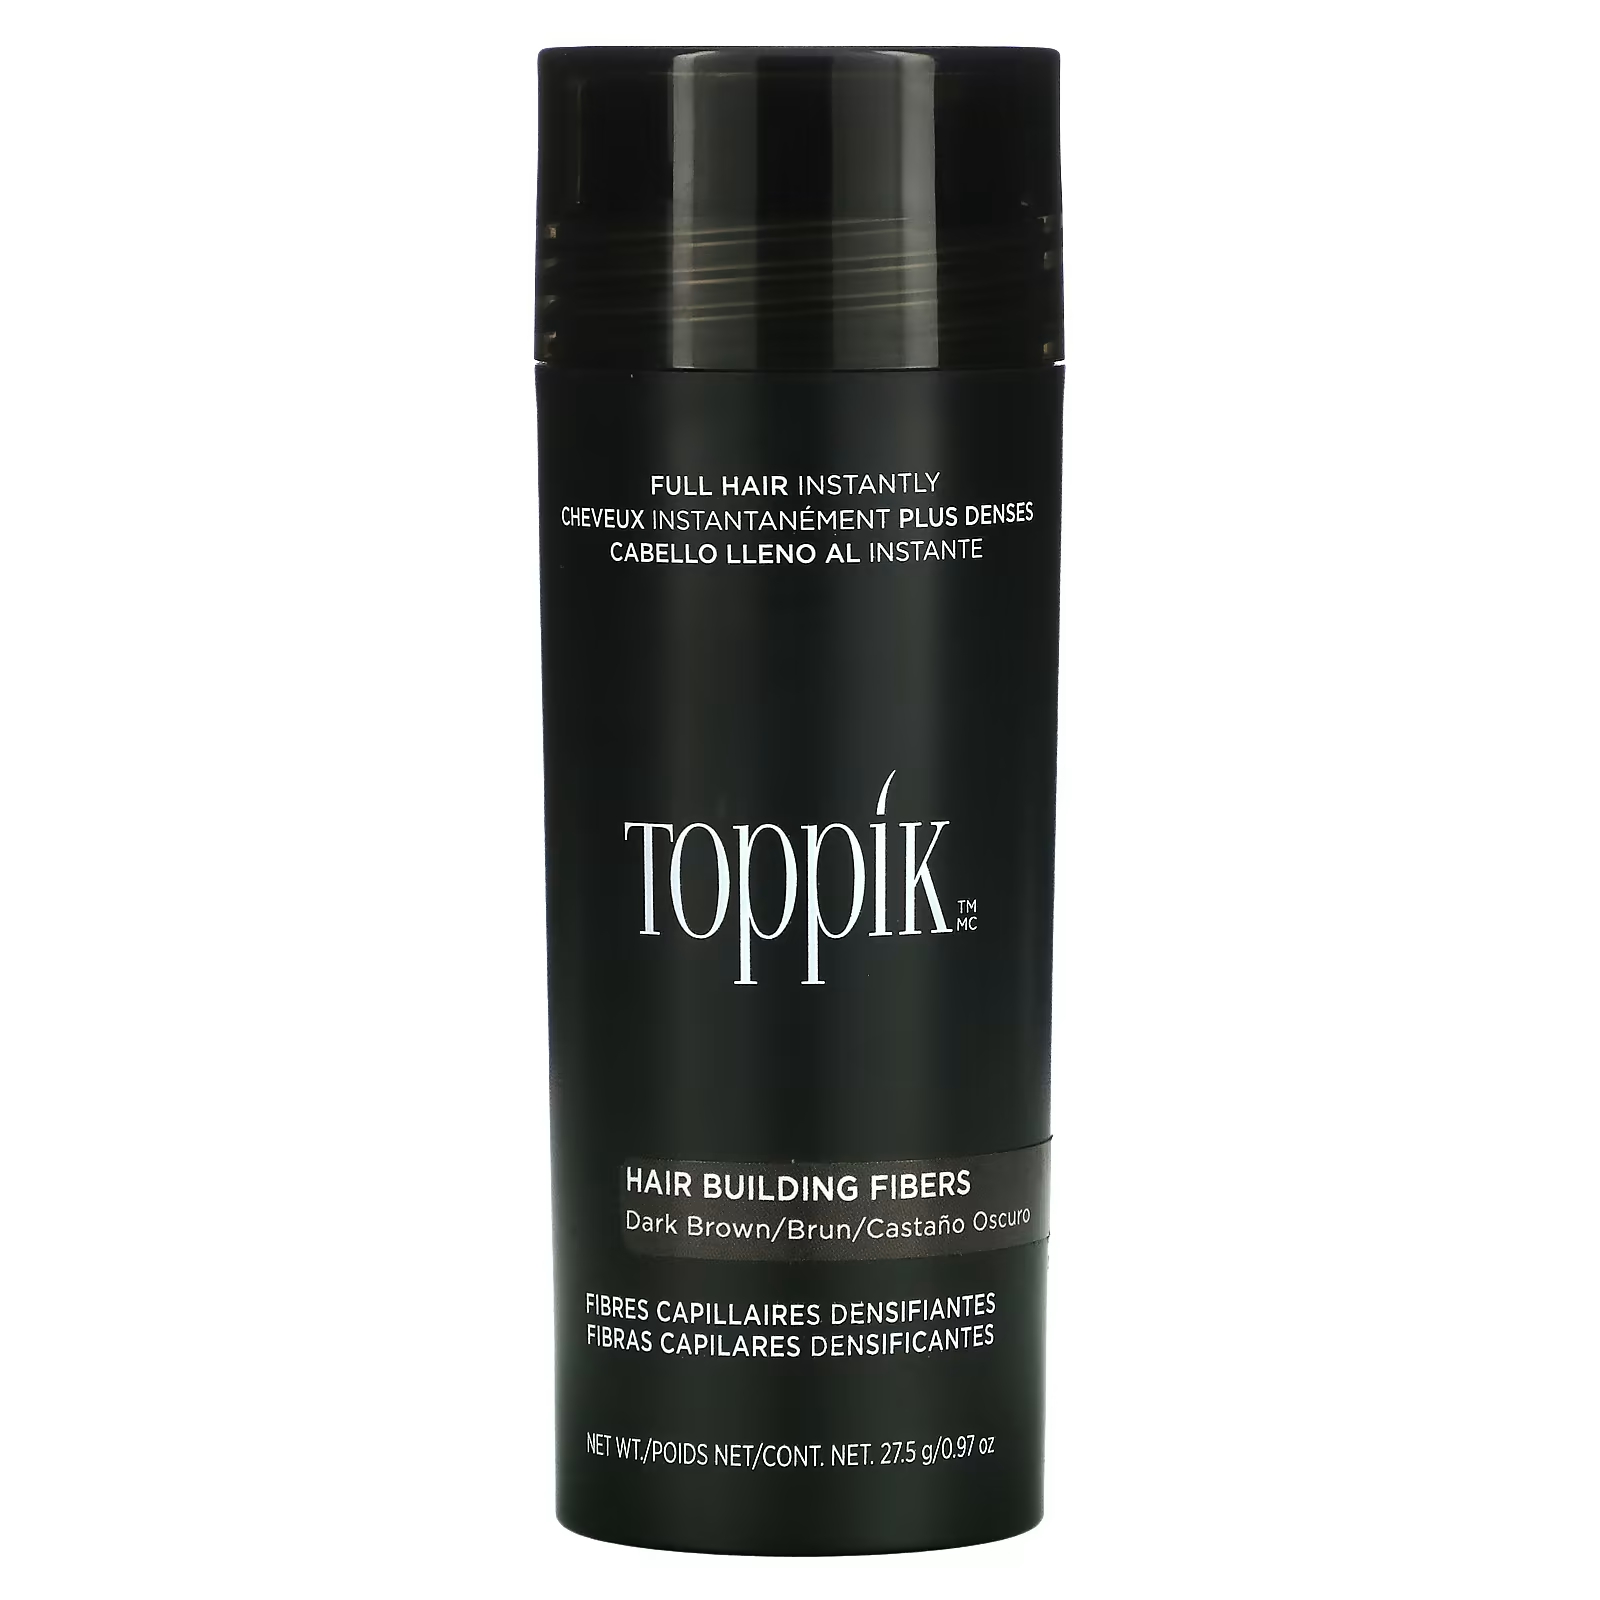 Загуститель для волос Toppik Hair Building Fibers темно-коричневый toppik загуститель волос hair building fibers black 28 мл 27 5 г